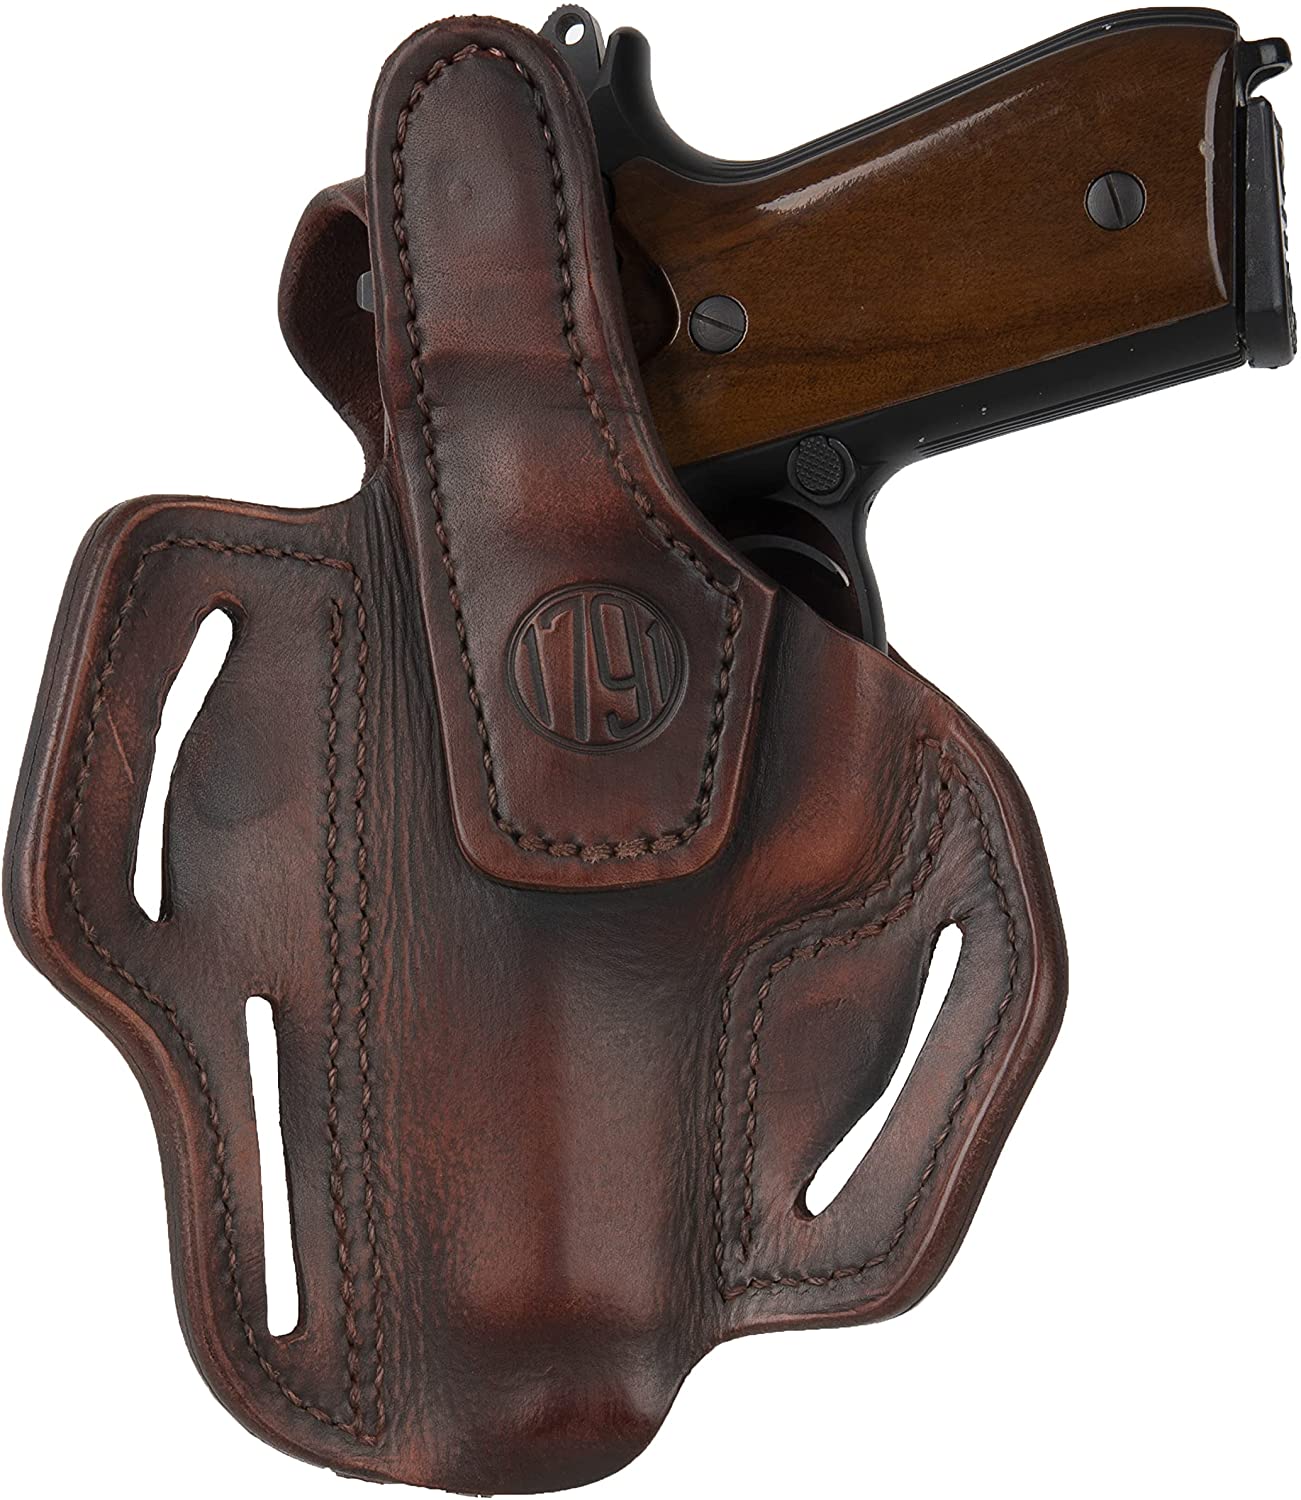 nouveautes - cuir western - holsters - étui pistolet - cuir pour